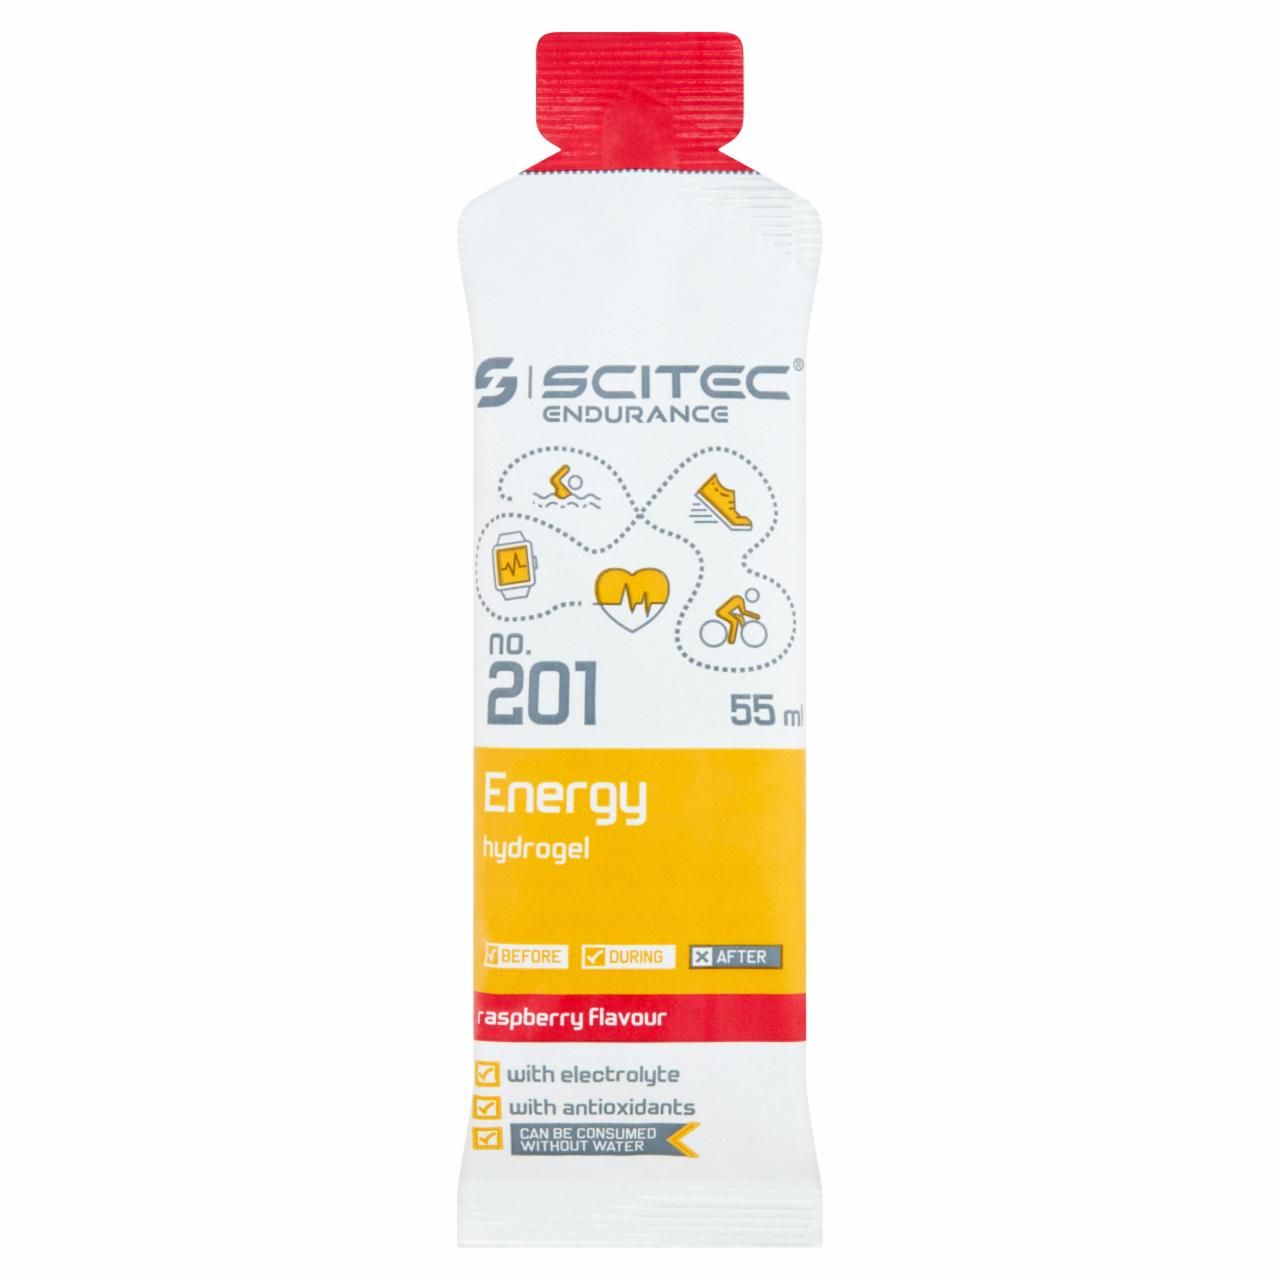 Képek - Scitec Endurance Energy Hydrogel málna ízű, vitaminokat és ásványi anyagokat tartalmazó gél 55 ml